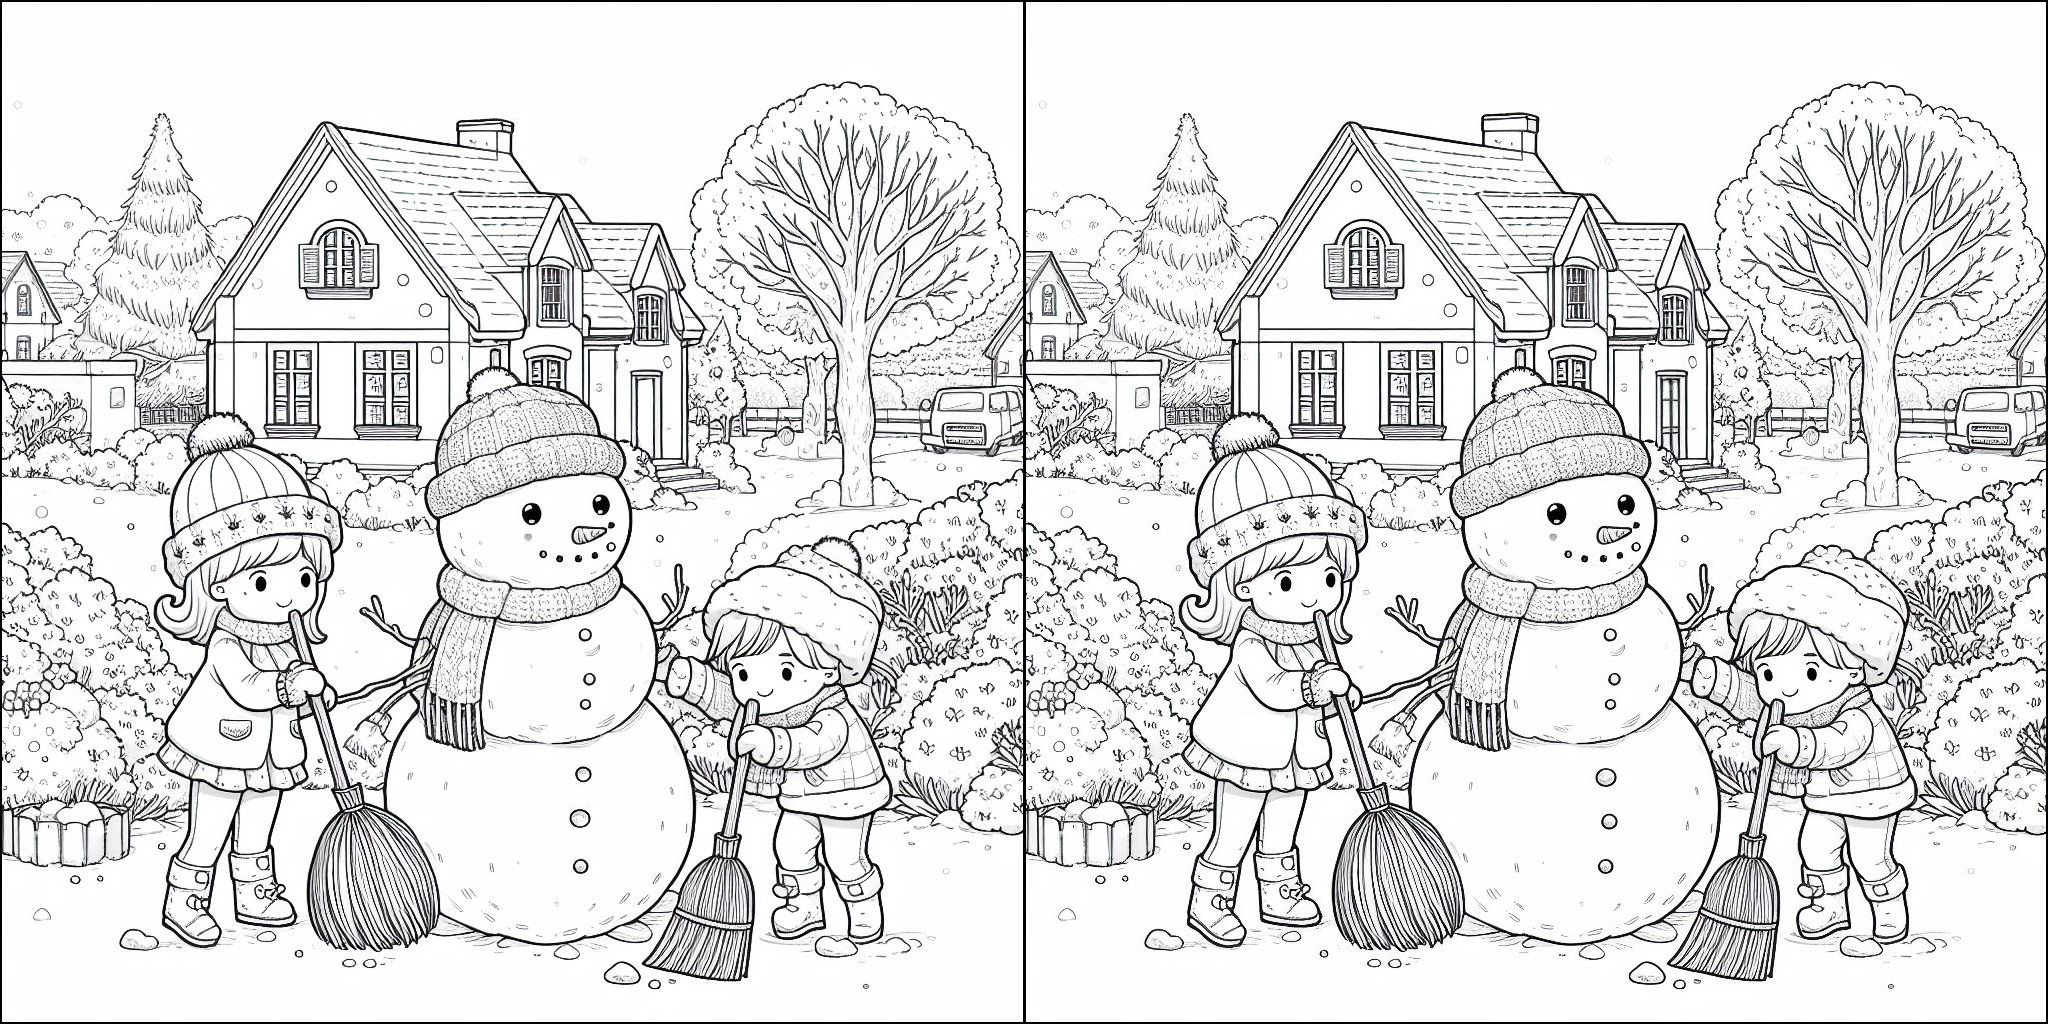 Kolorowanka Snowman i dzieci